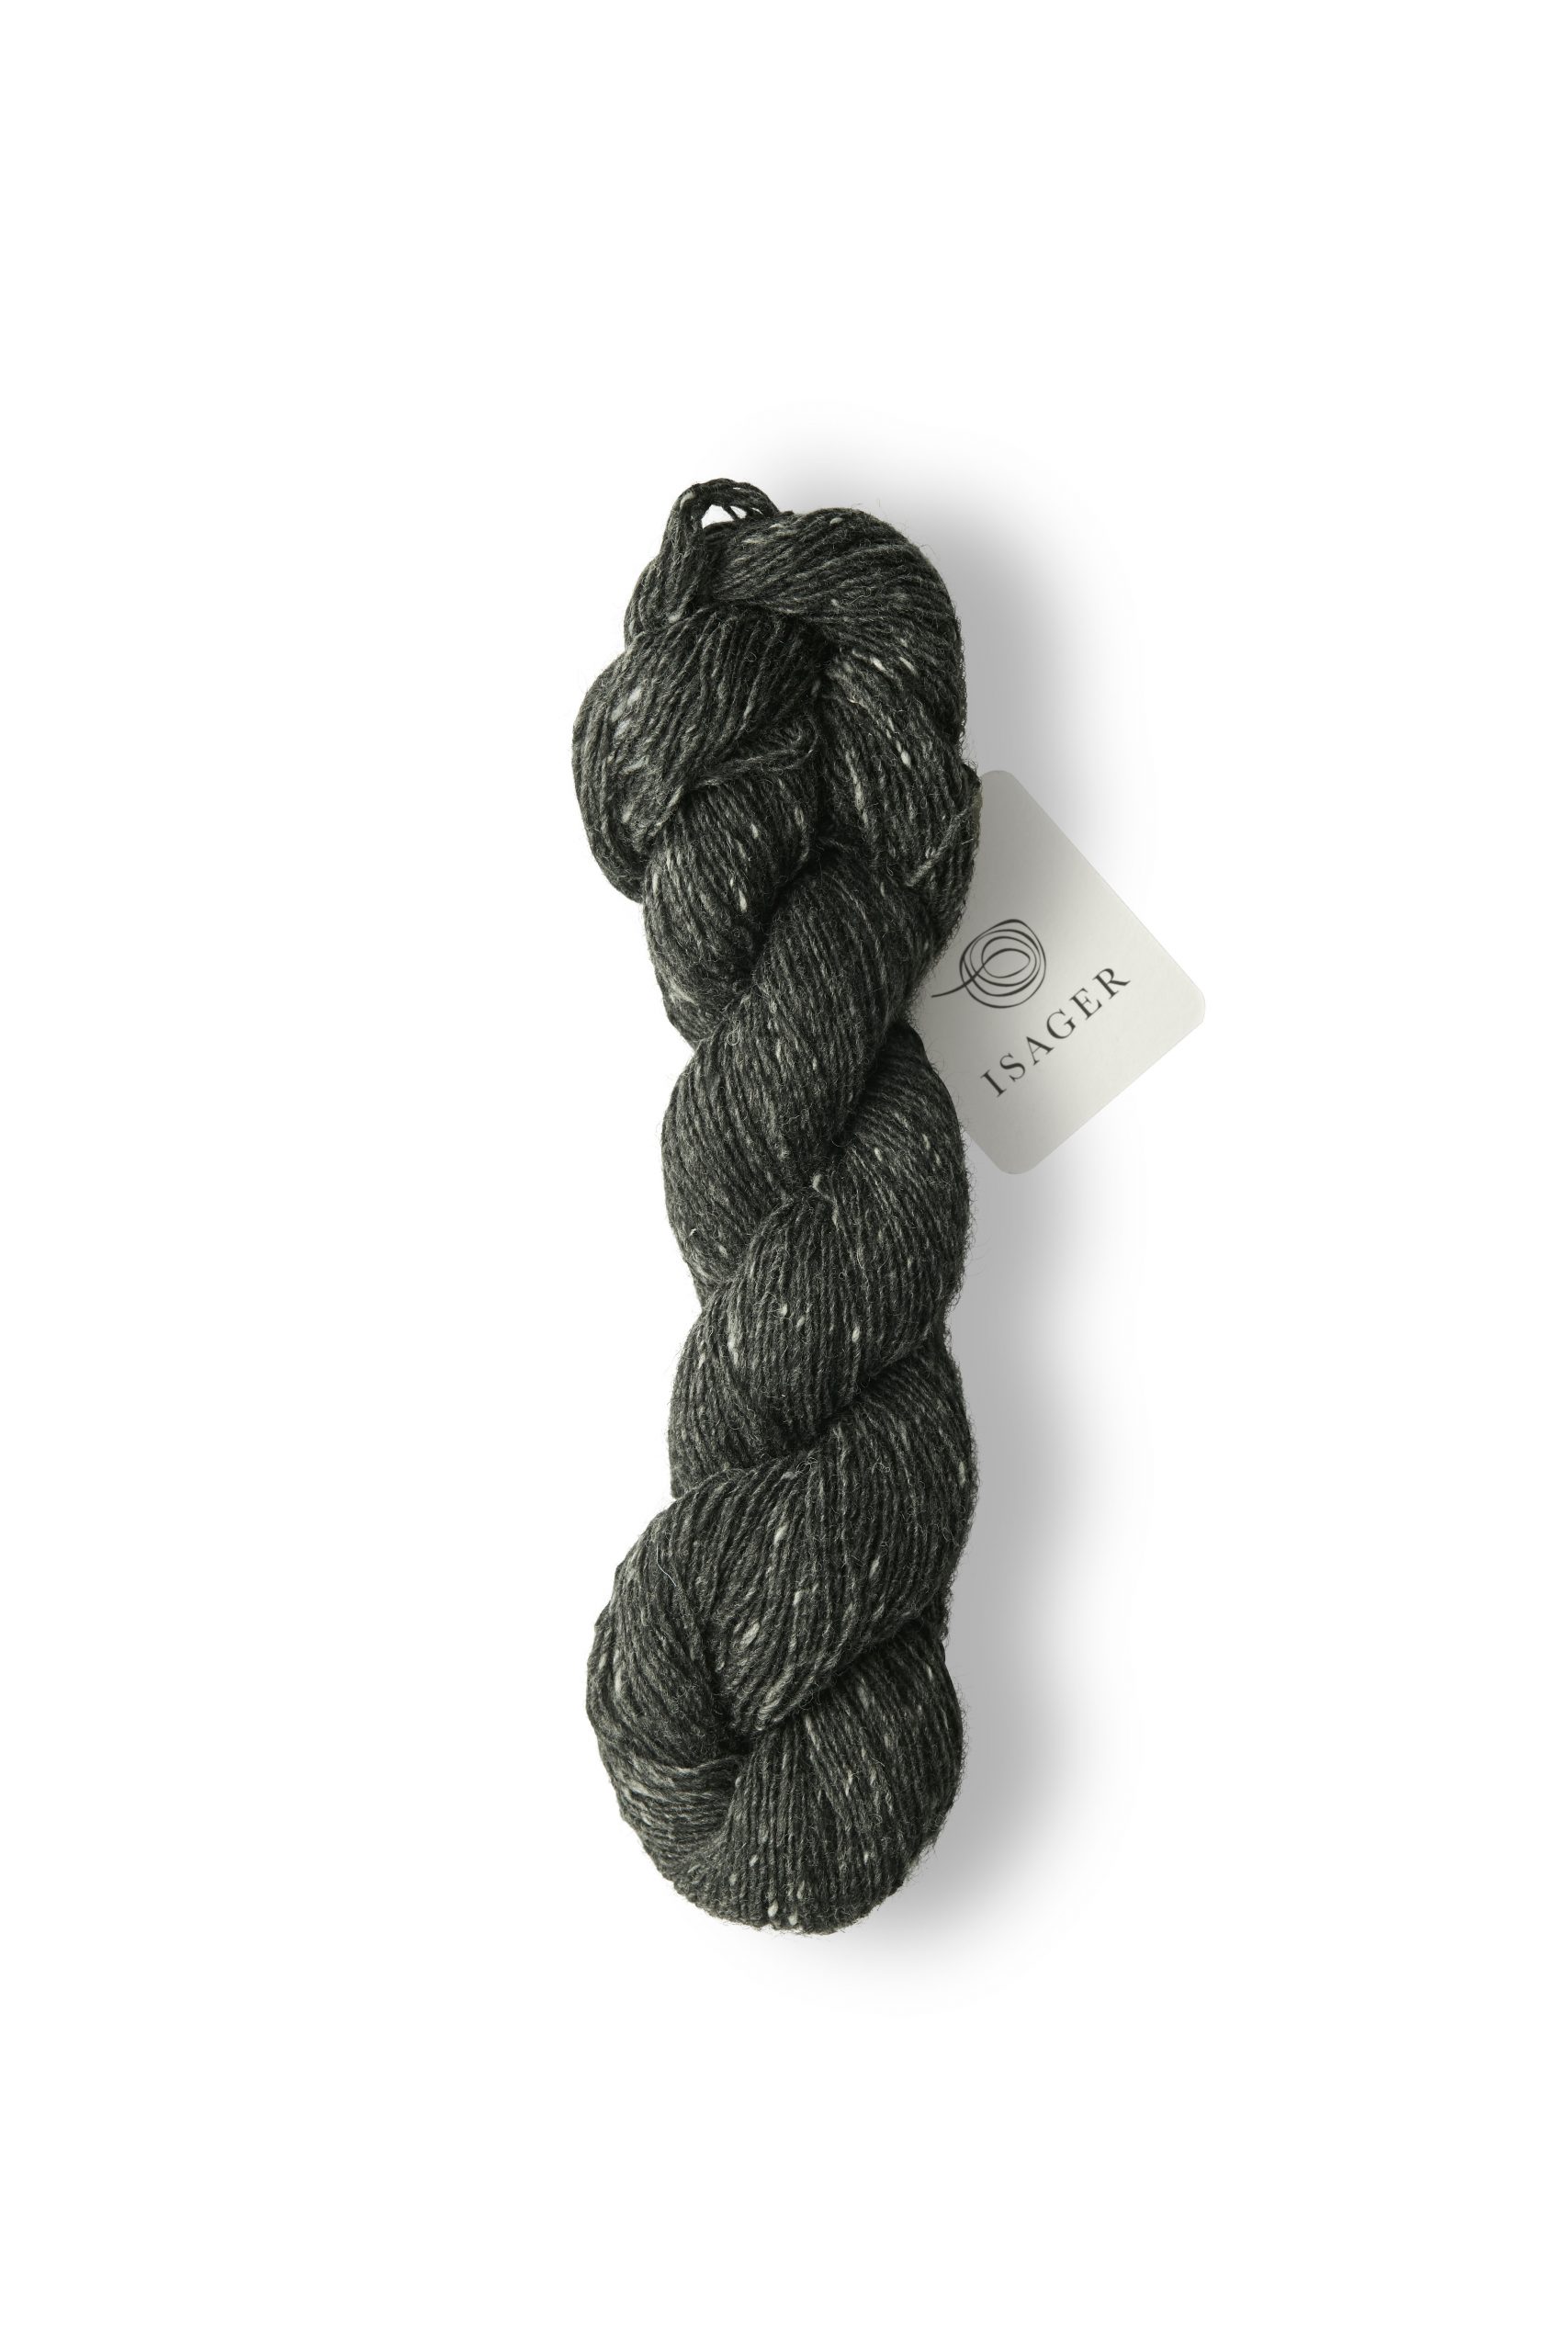 Garn Isager Tweed Charcoal